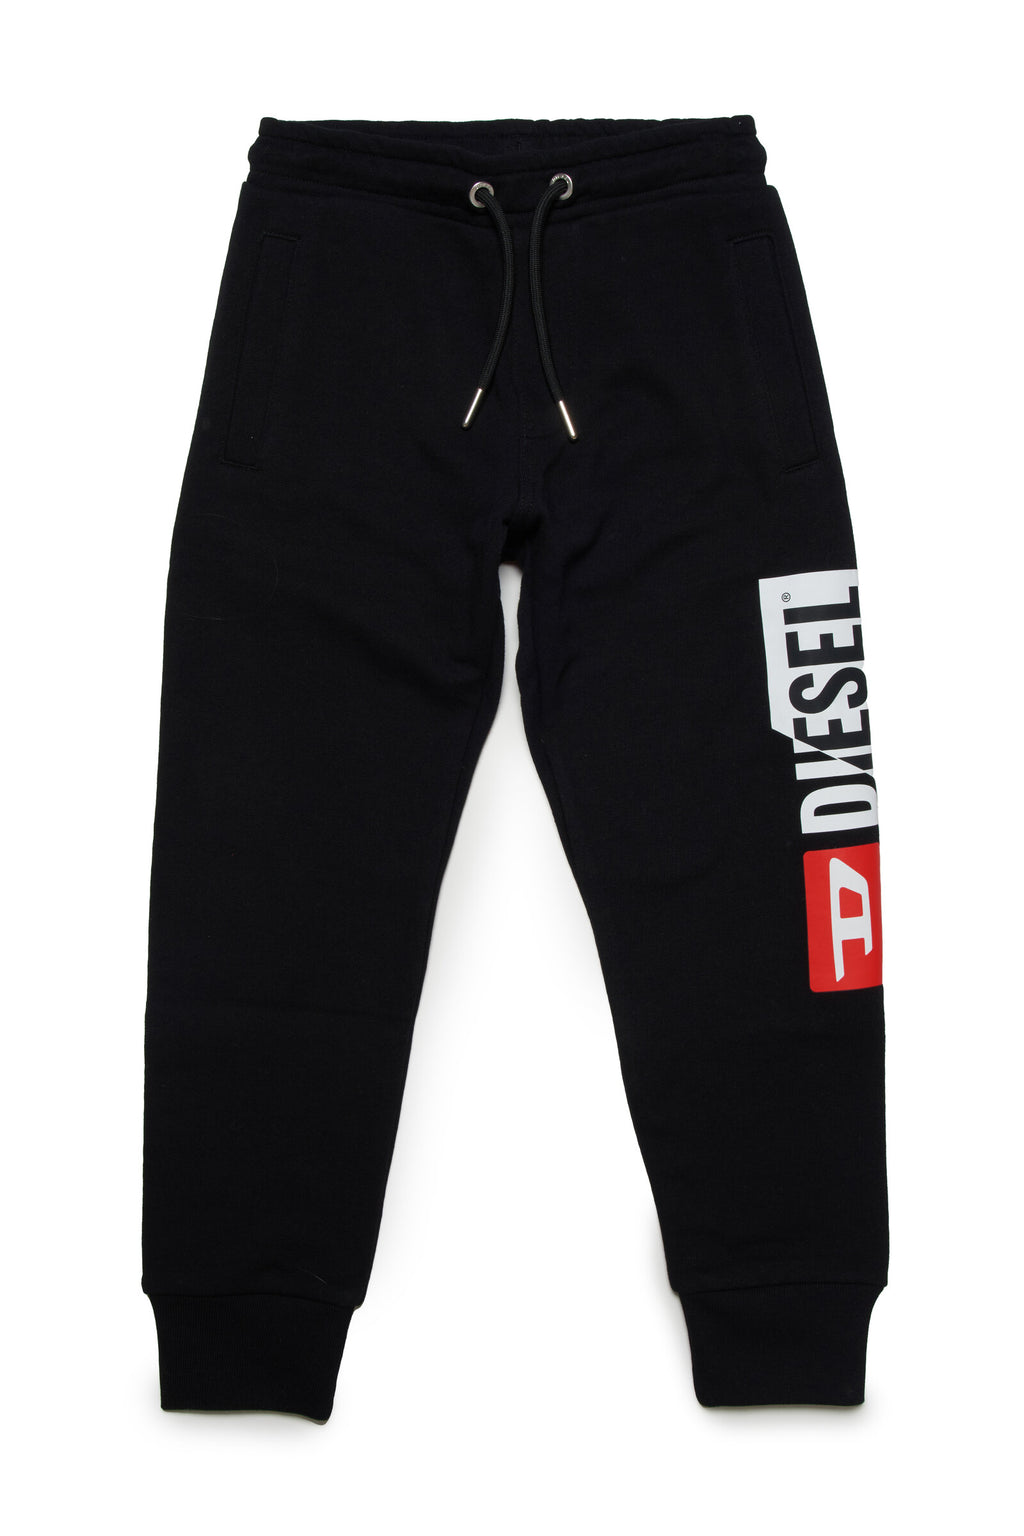 Pantalón jogger negro con logo Diesel double